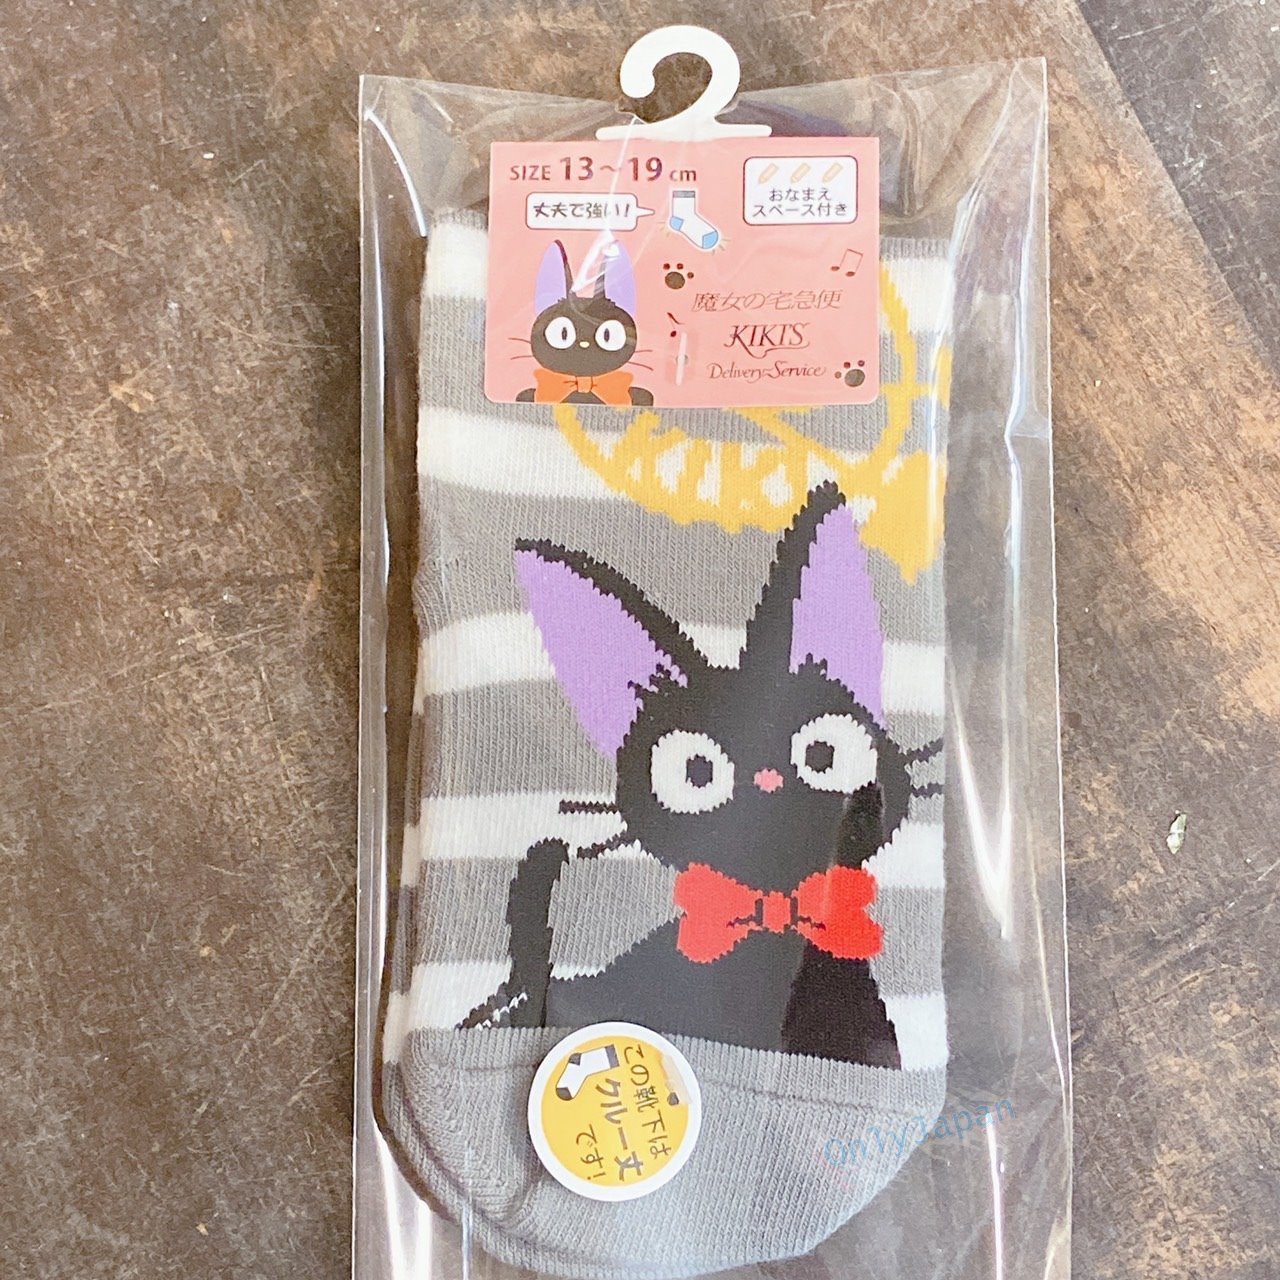 真愛日本 可註名兒童襪子 吉吉看版灰白條紋 魔女宅急便 黑貓兒童襪子 兒童襪 卡通襪 襪子